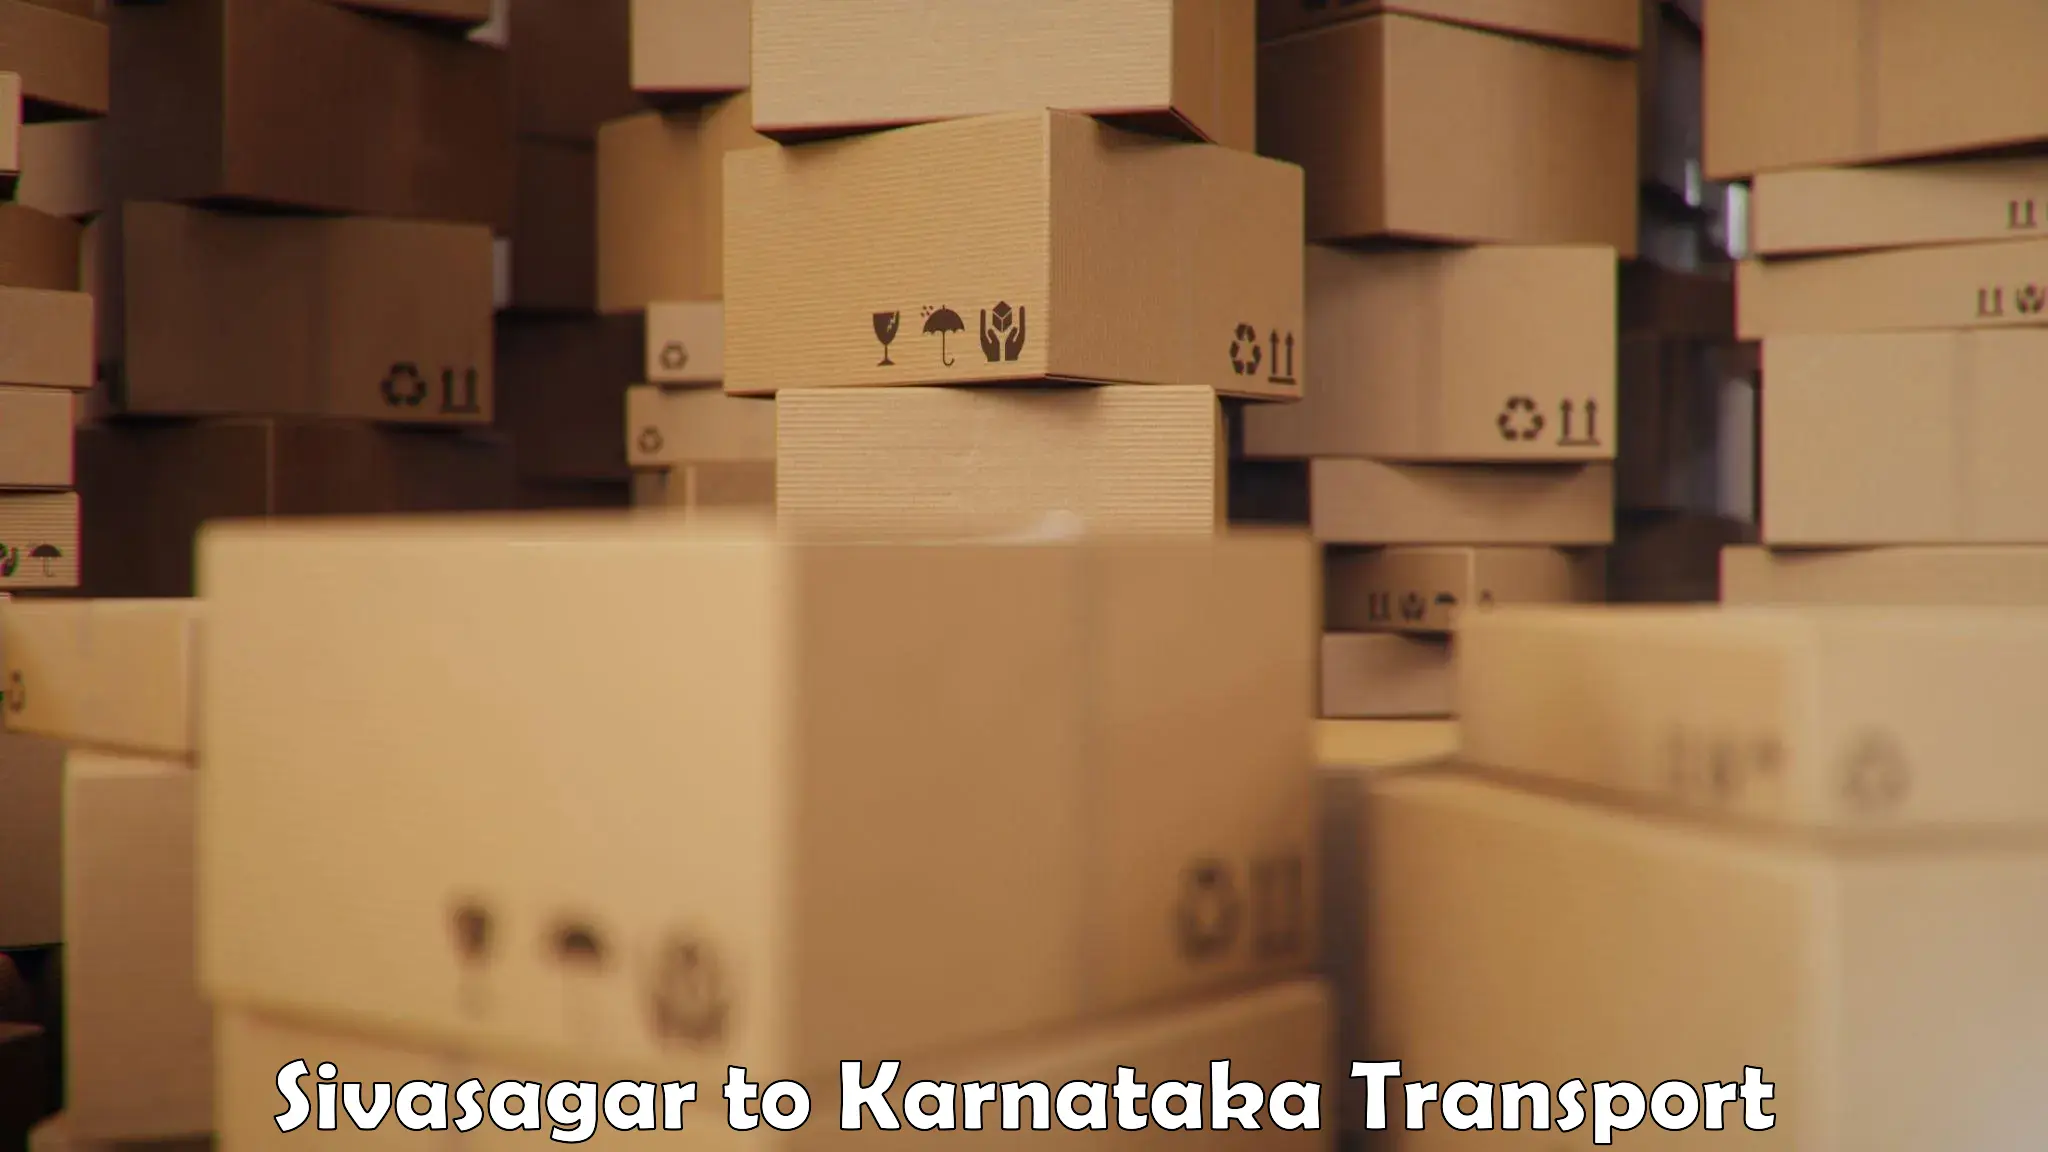 Goods delivery service Sivasagar to Kanjarakatte